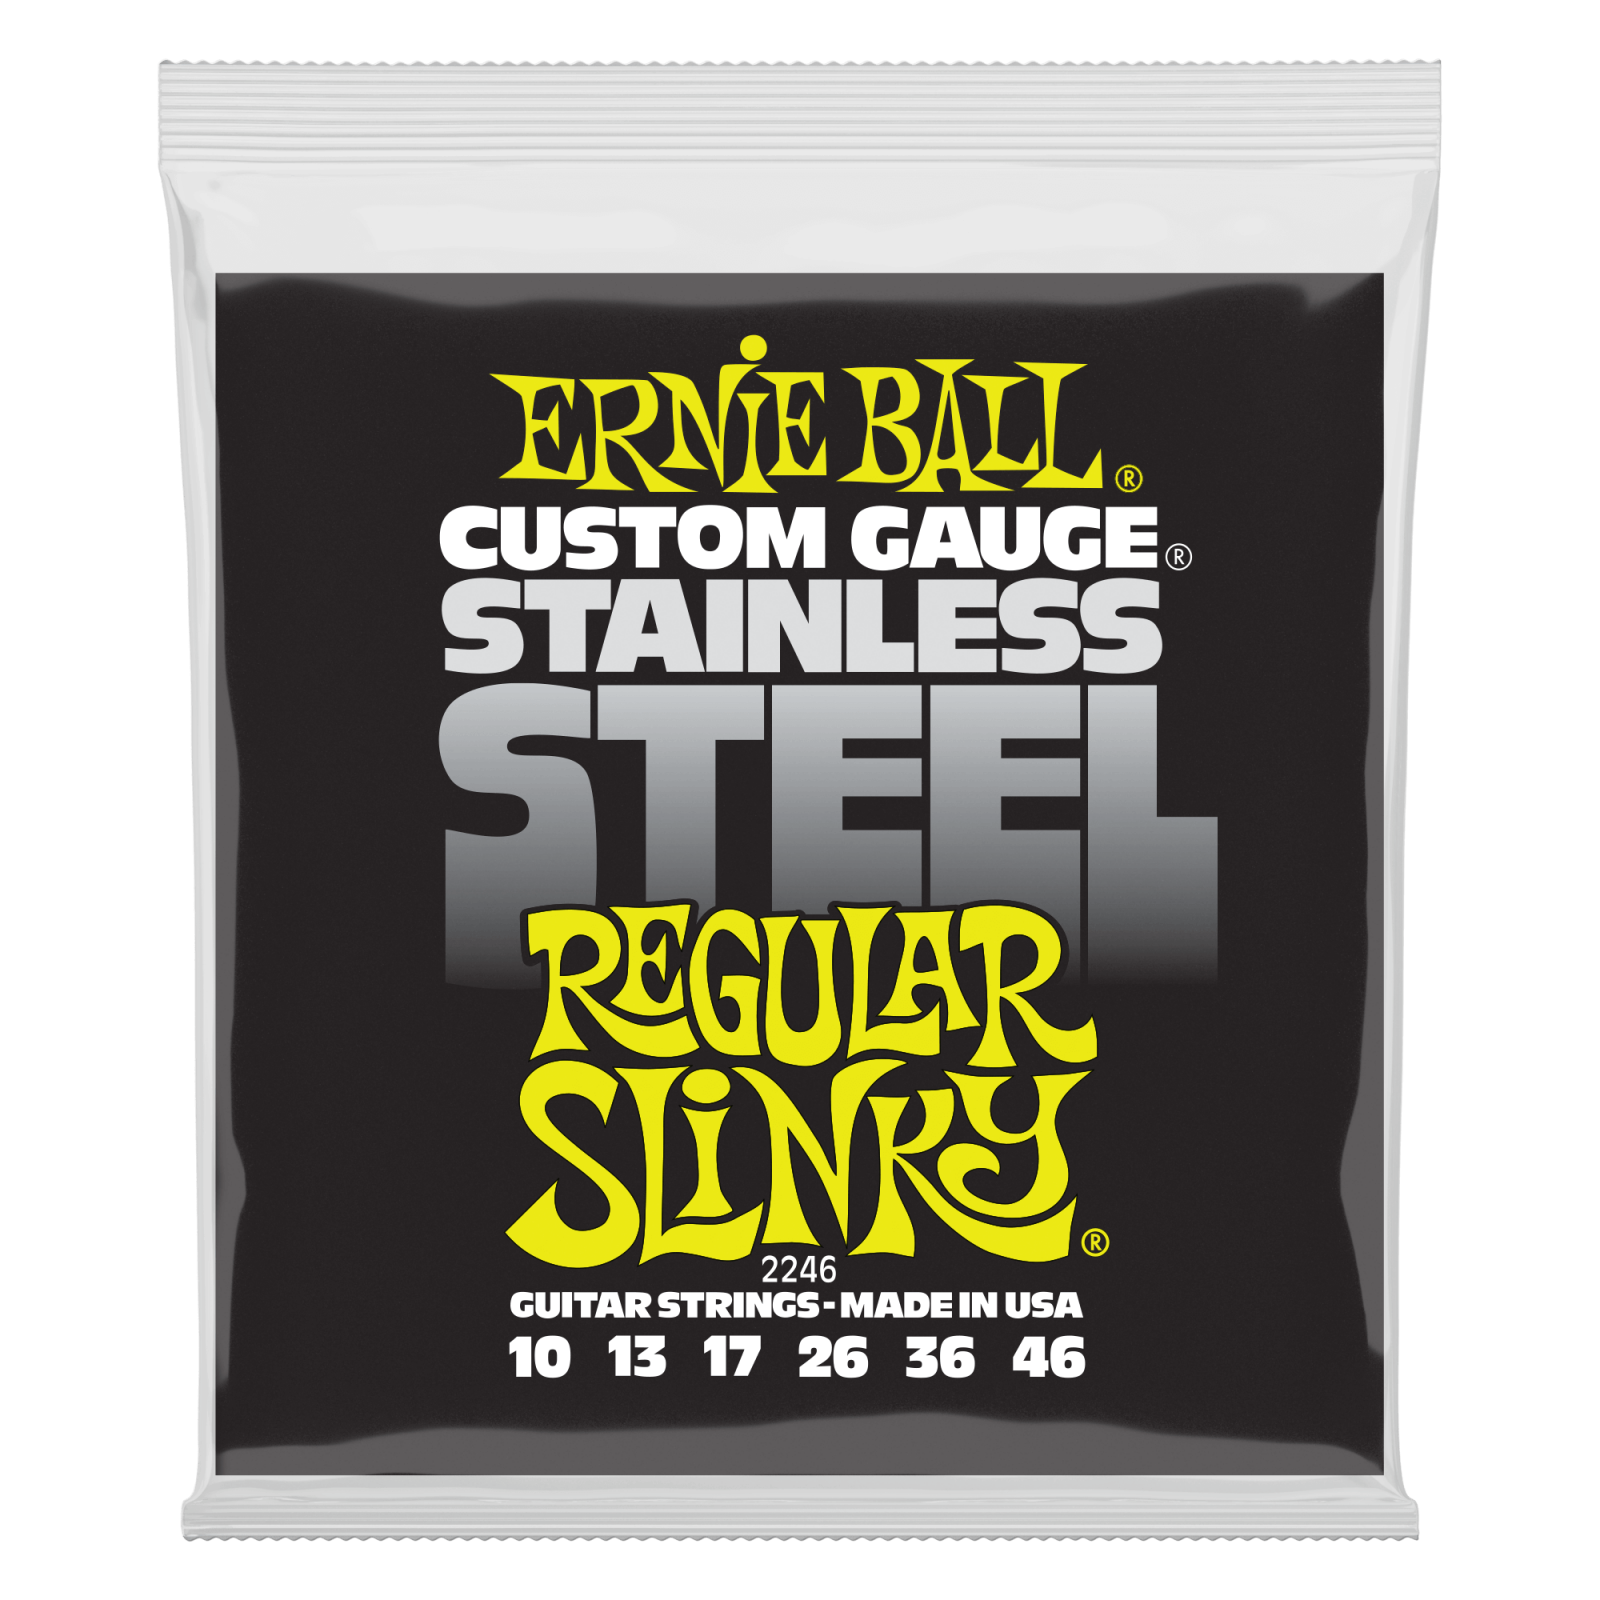 ERNIE BALL 2246 струны для эл. гитары Regular (10-13-17-26-36-46) Stainless Steel